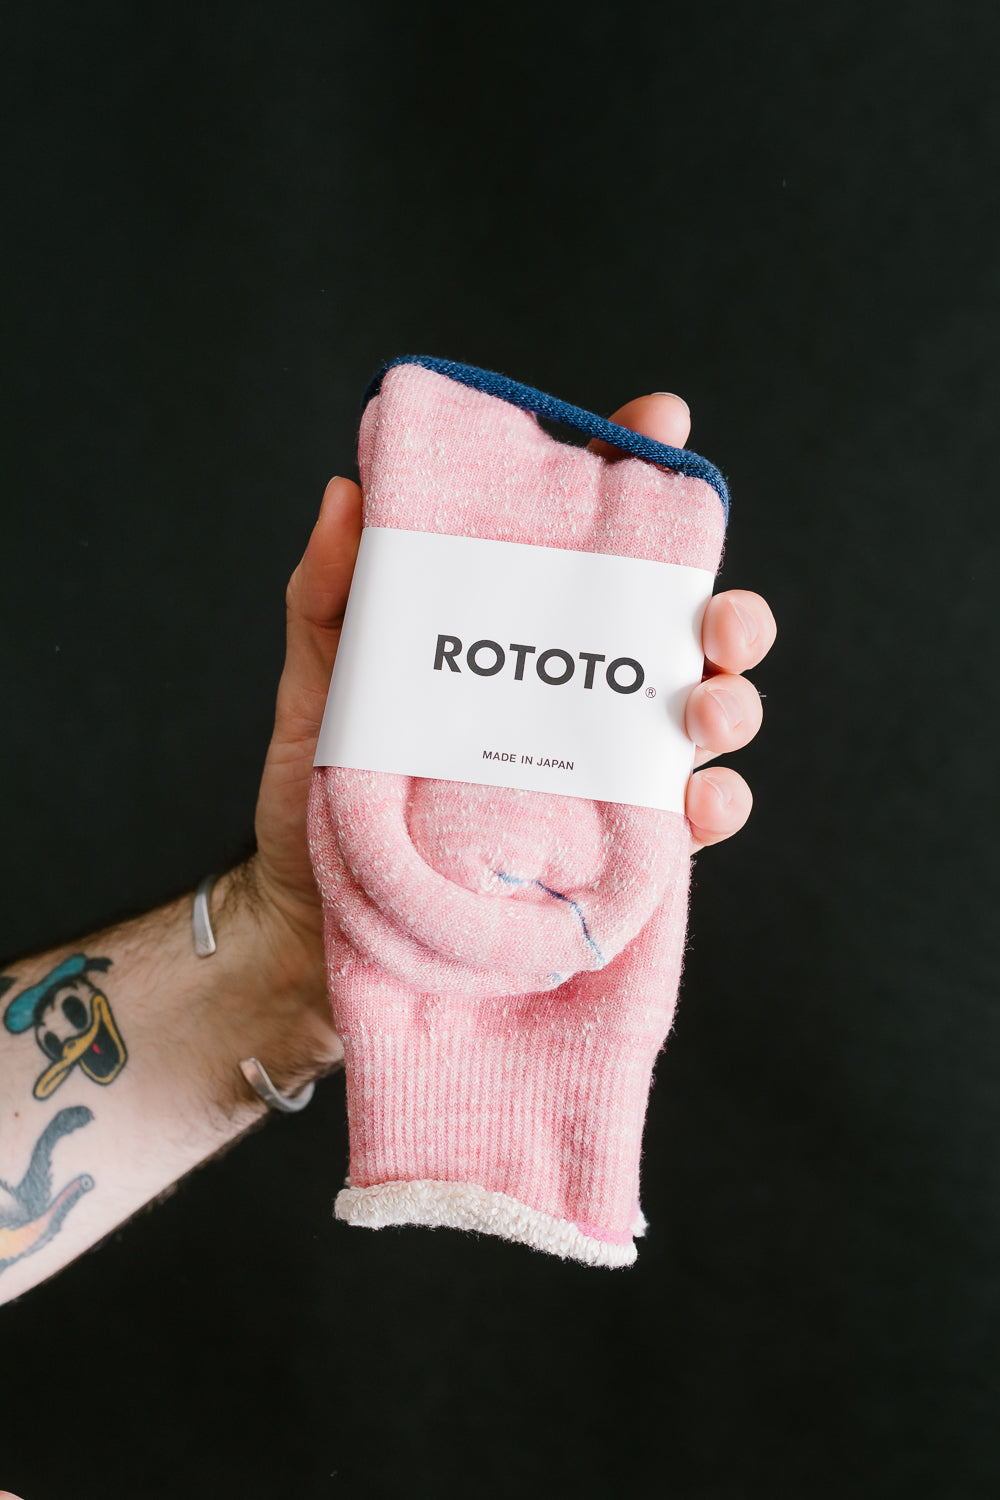 R1001 - Double Face Crew Socks Merino Wool OG - Light Pink